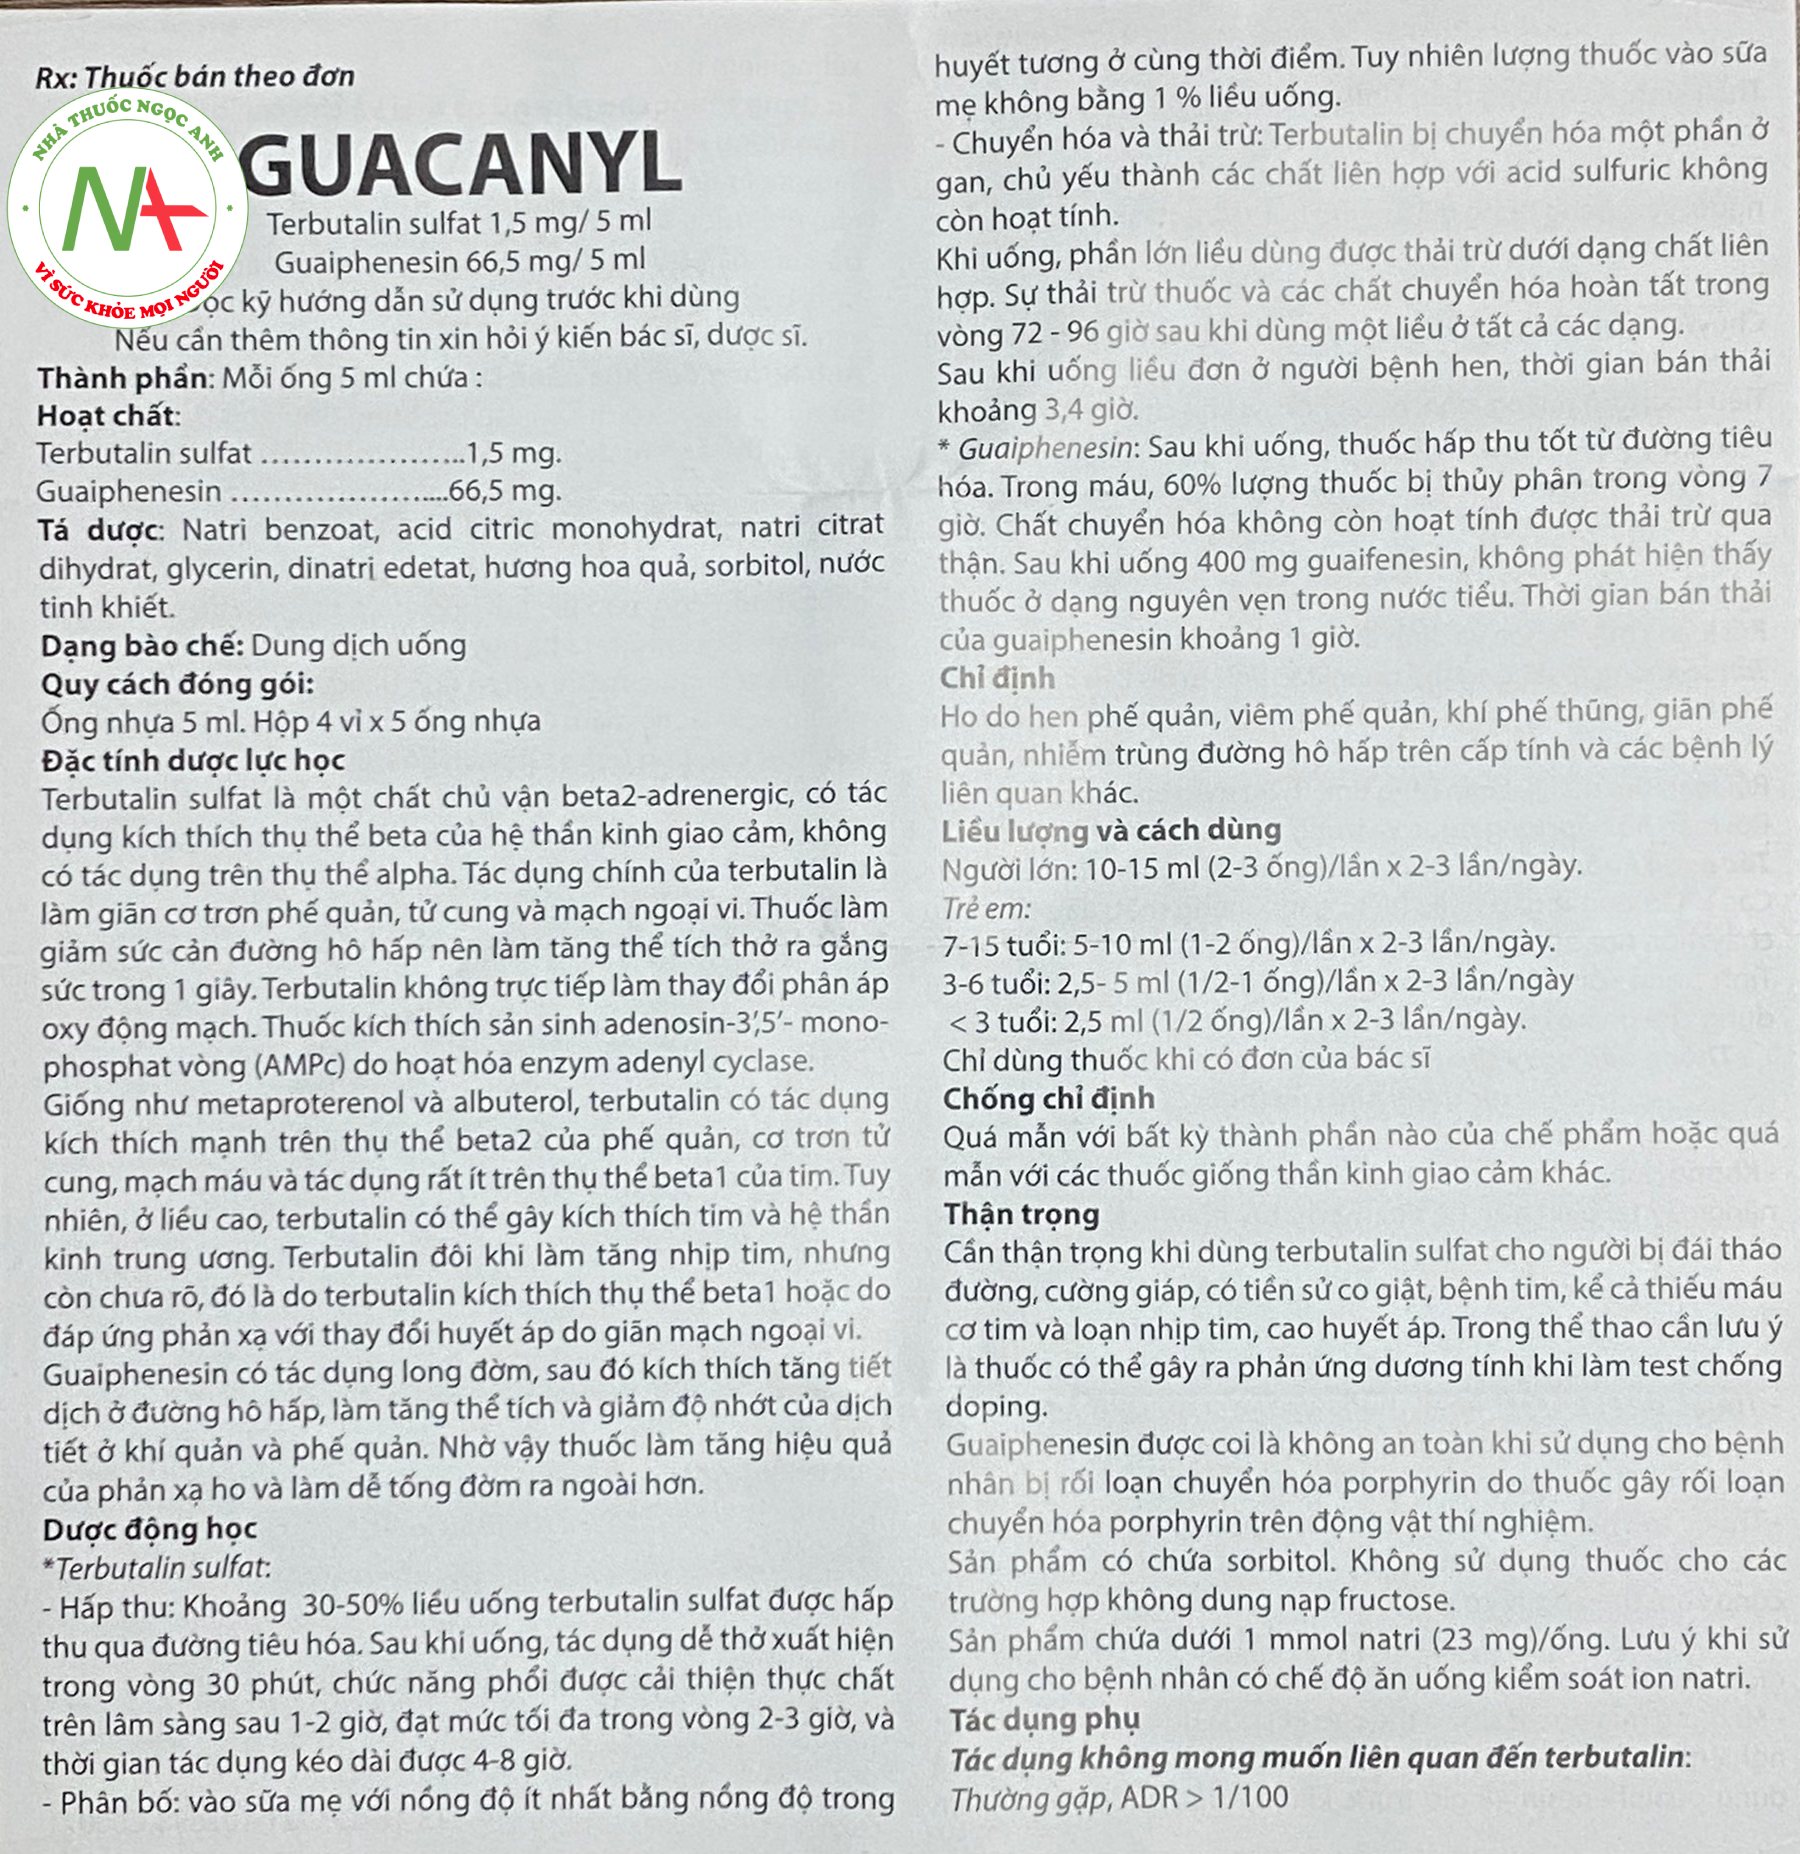 Hướng dẫn sử dụng thuốc Guacanyl